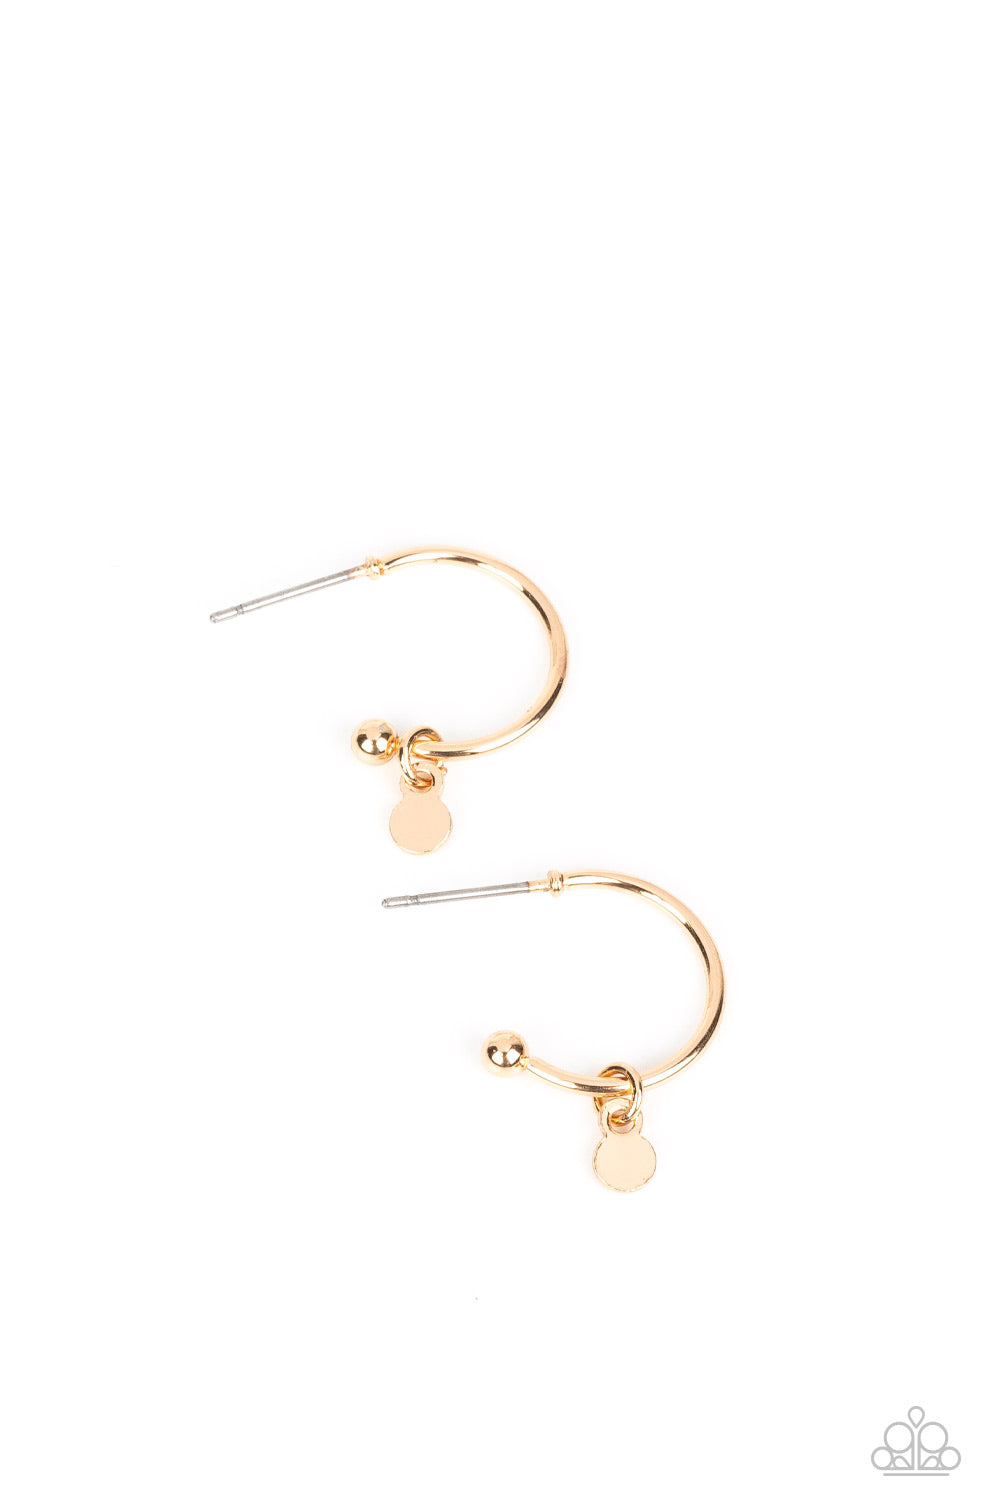 Paparazzi Modern Model - Gold Earrings